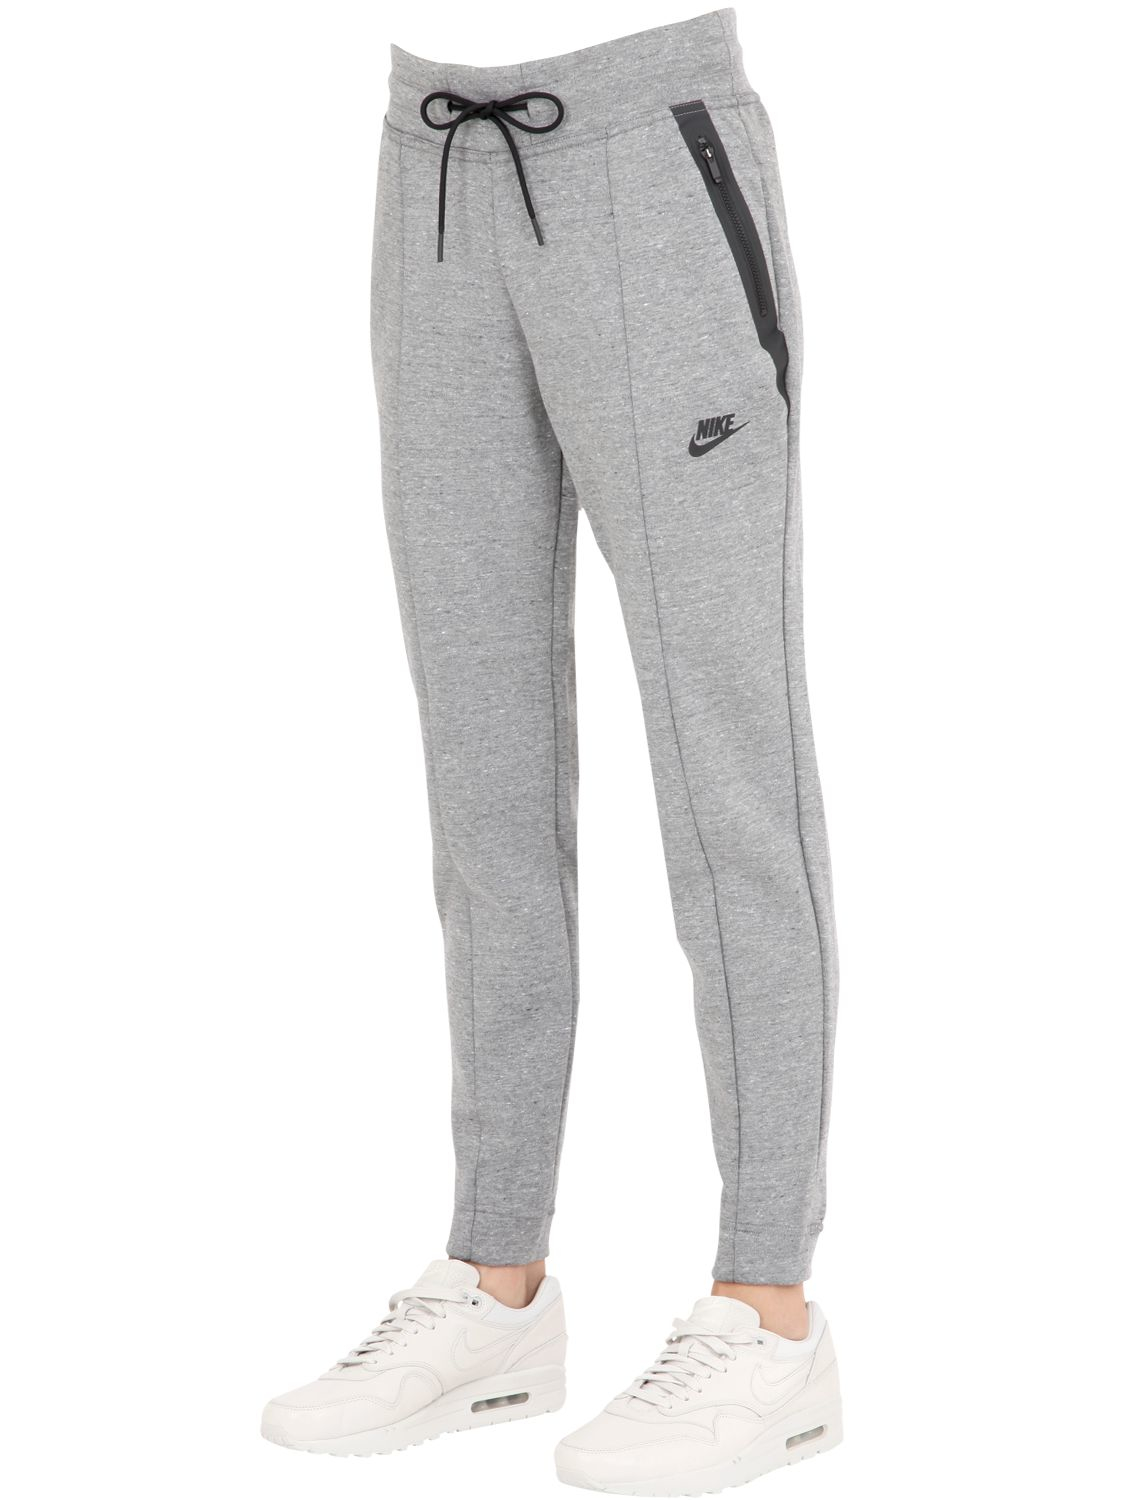 Nike Tech Flyknit Jogging Pants in Gray - Lyst